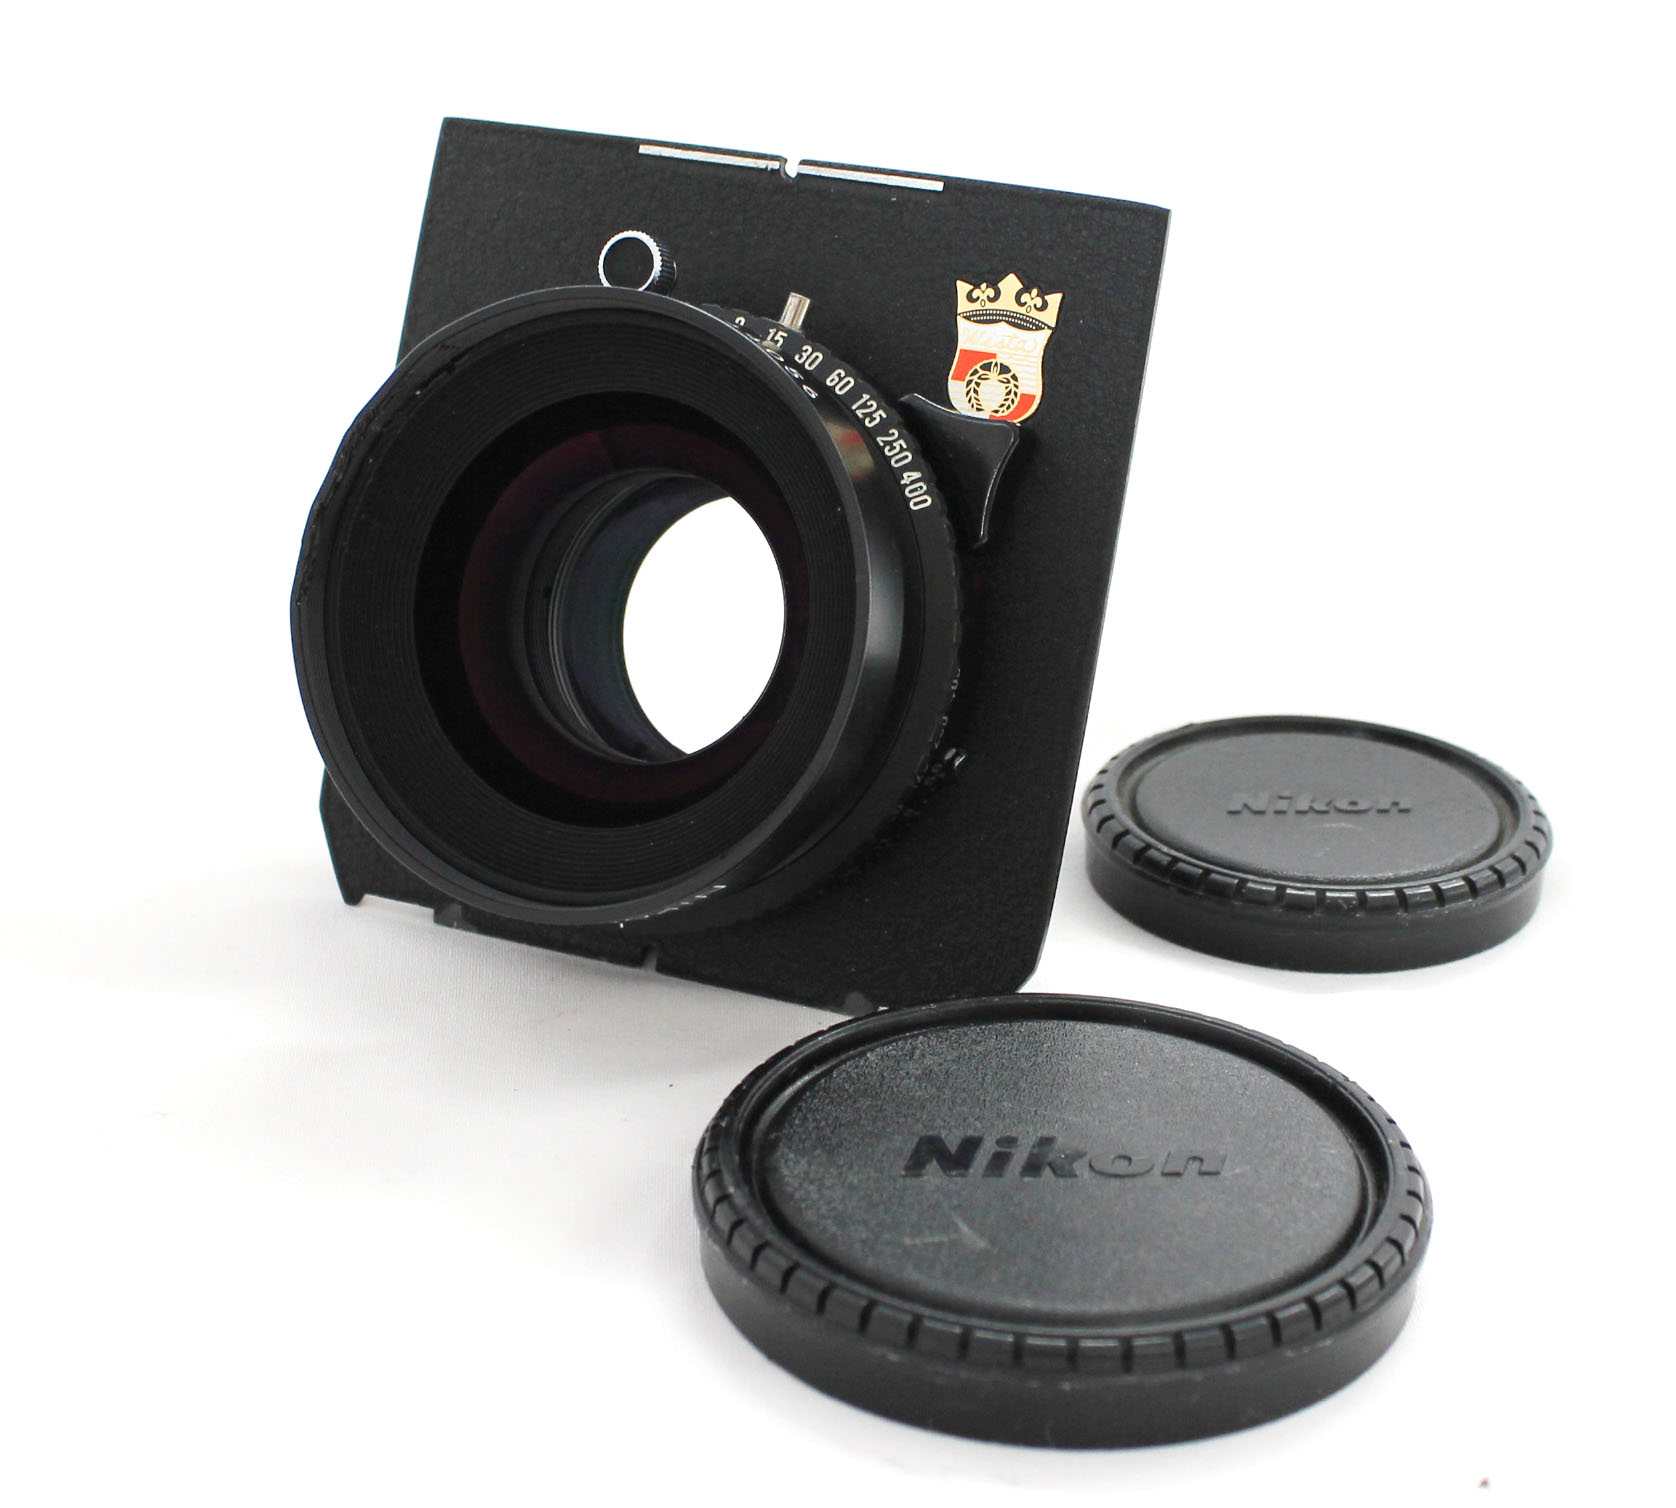 Nikon Nikkor-W 180mm F/5.6 4x5 Large Format Lens Copal 1 Shutter Wista Linhof Board from Japan